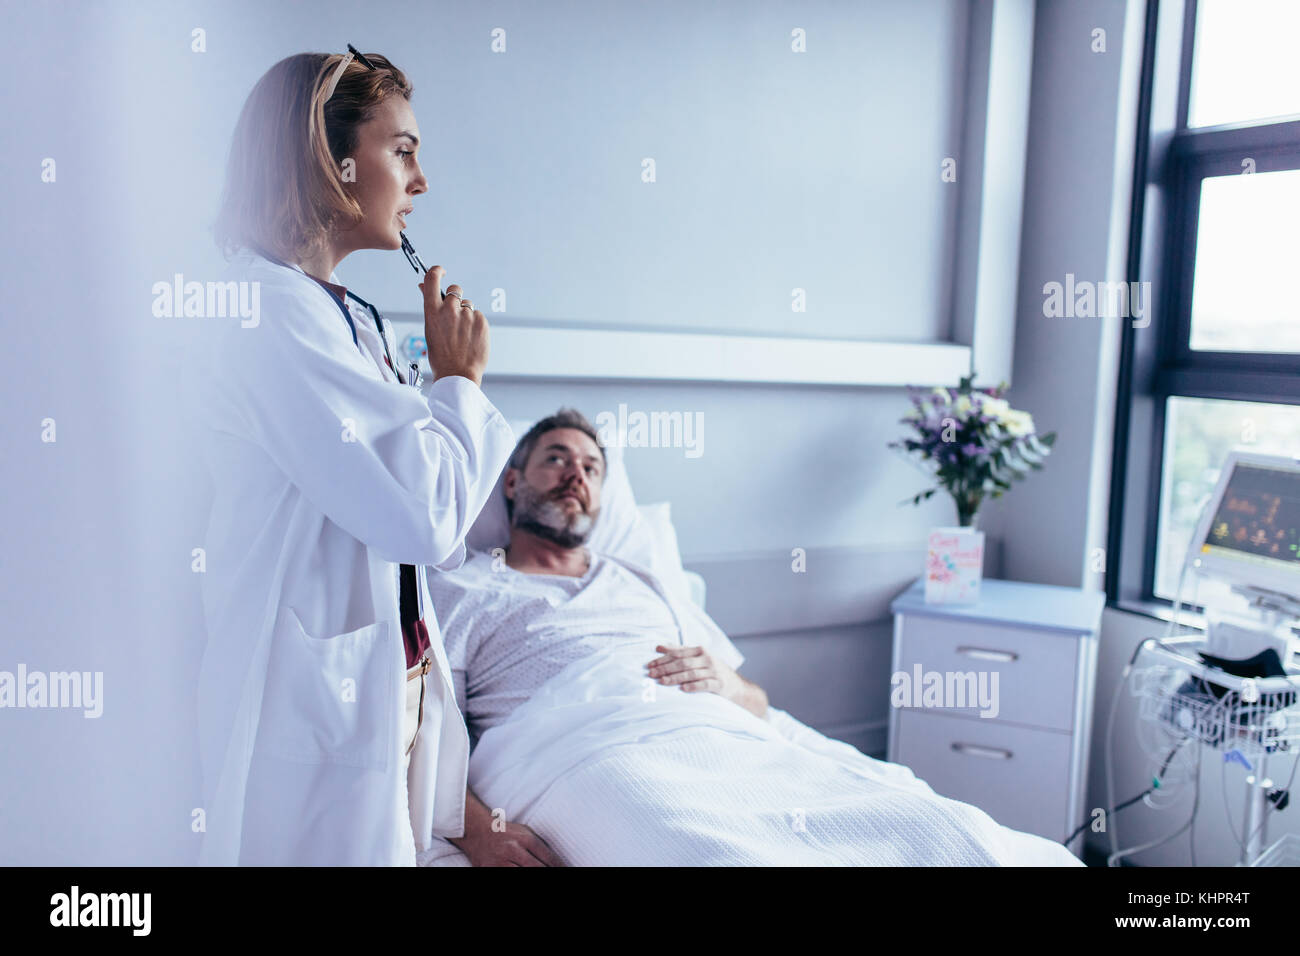 Arzt im Krankenhaus Zimmer in Patient Monitoring Device mit kranken Mann im Bett lag. Arzt die Entscheidung für eine Behandlung am Krankenhaus Mann. Stockfoto